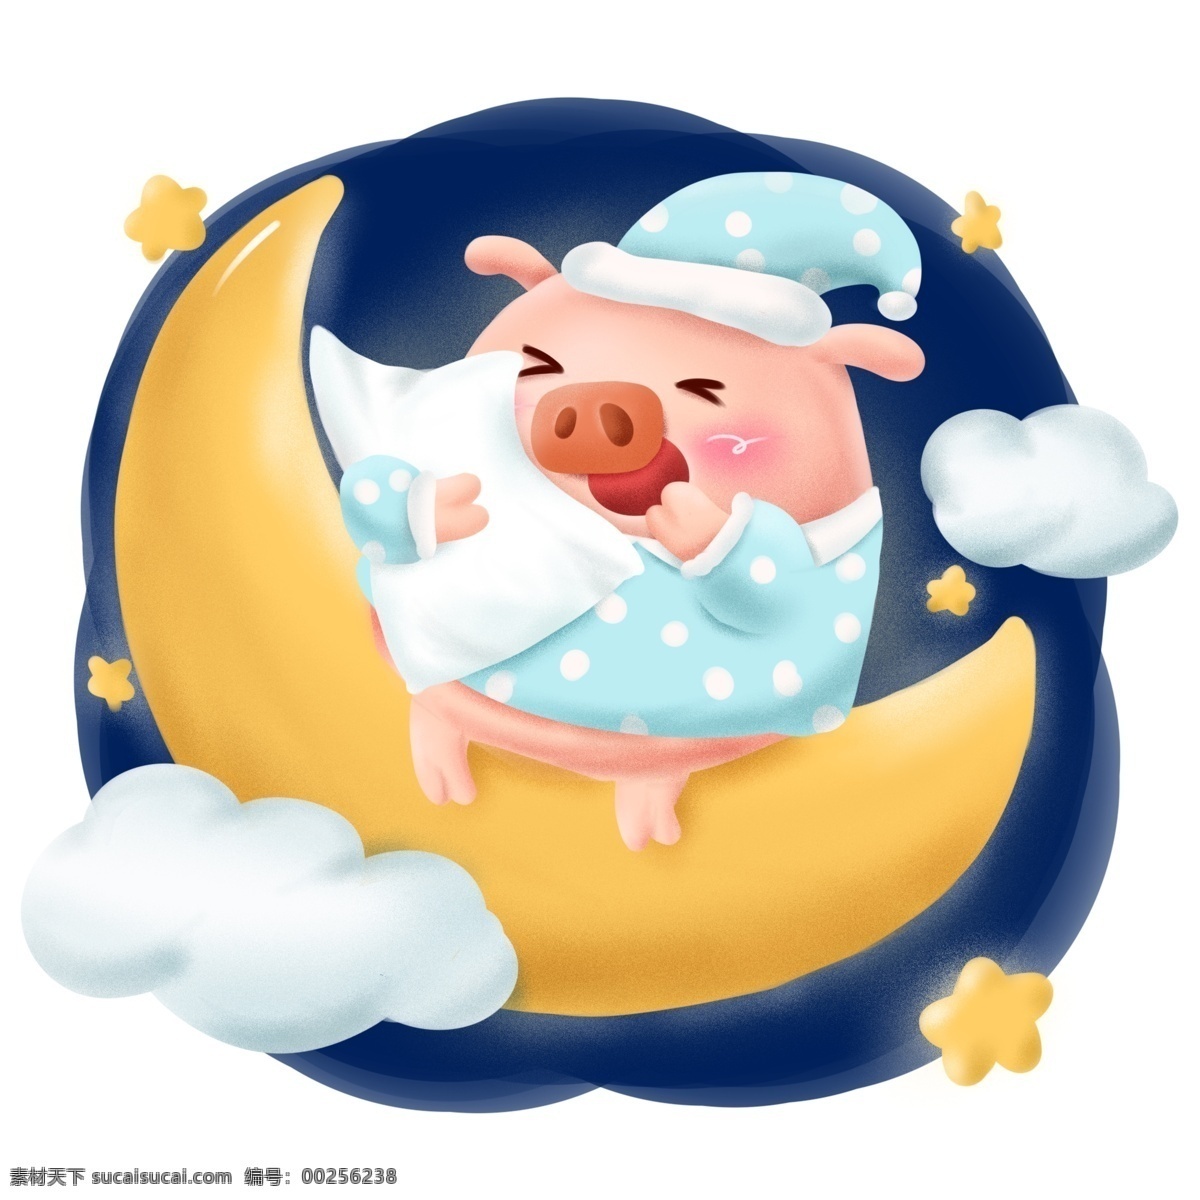 手绘 猪年 动物 形象 生活 日常 睡觉 晚安 商用 白云 星星 可爱 插画 小猪 夜晚 月亮 休息 卡通 元素 配图